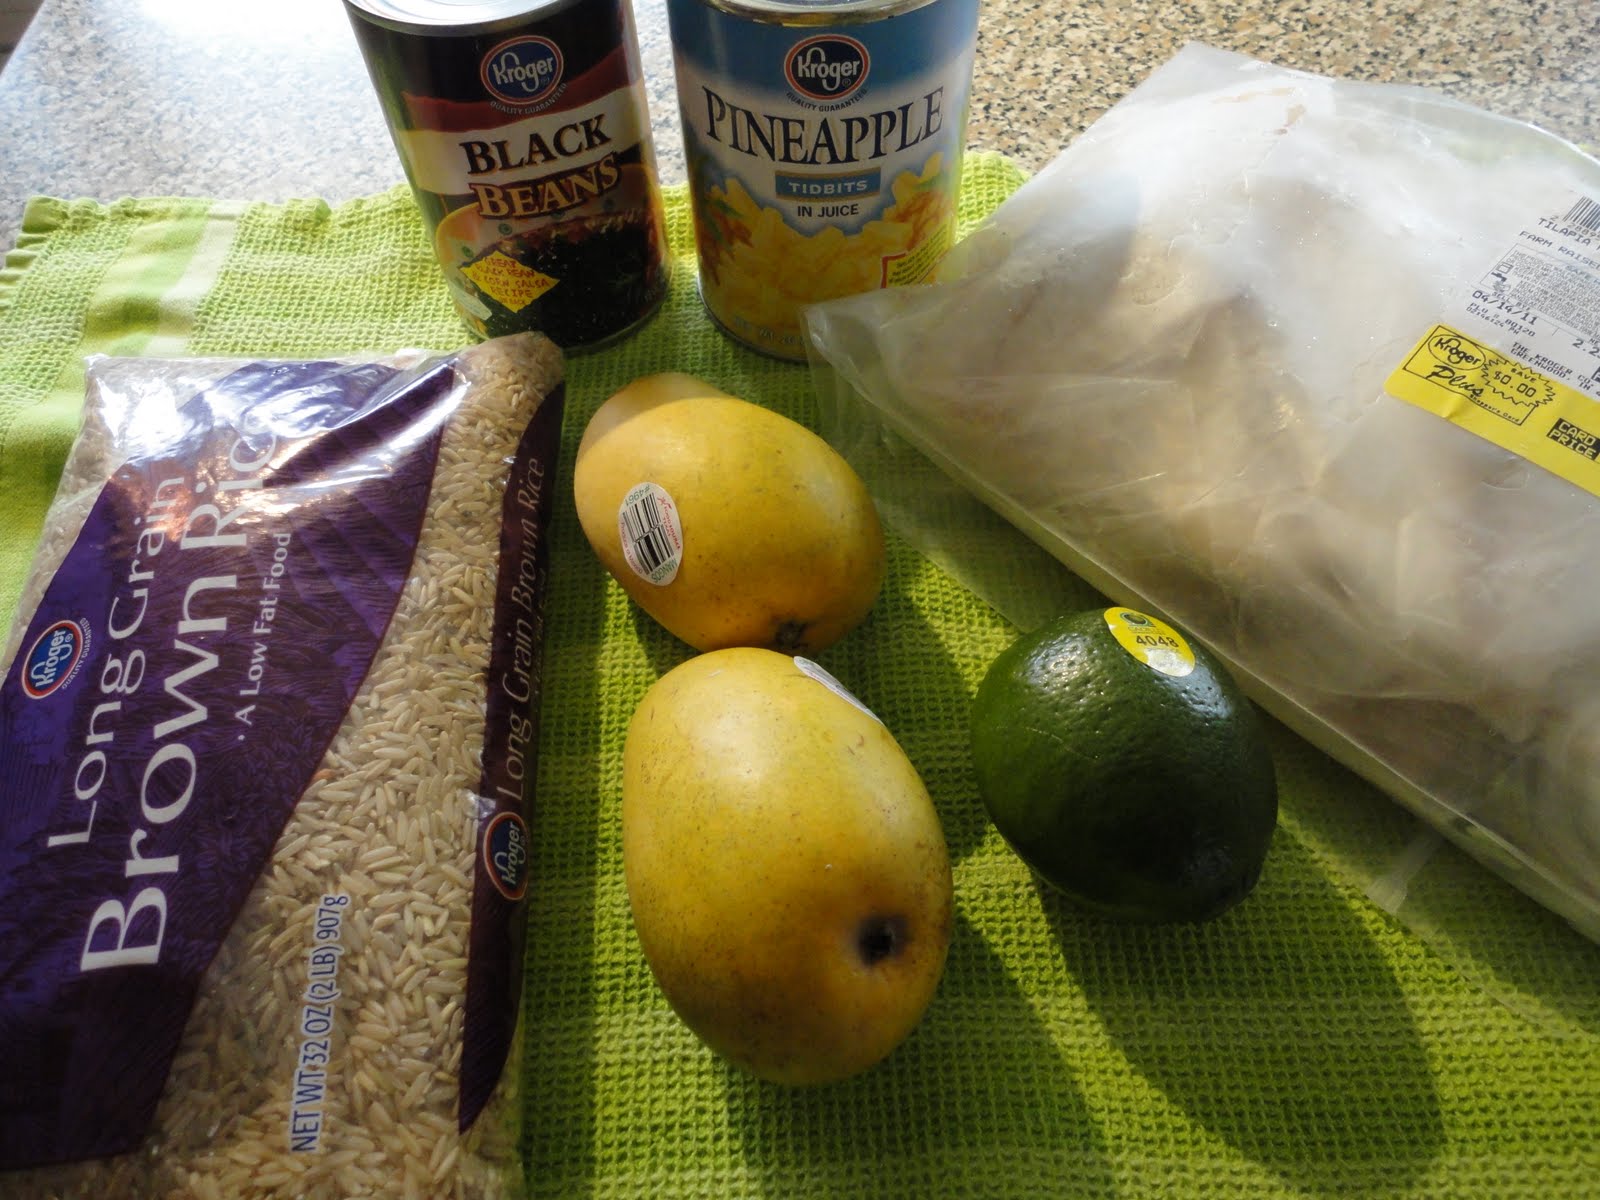 Lemons Bag, 2 lb - Kroger